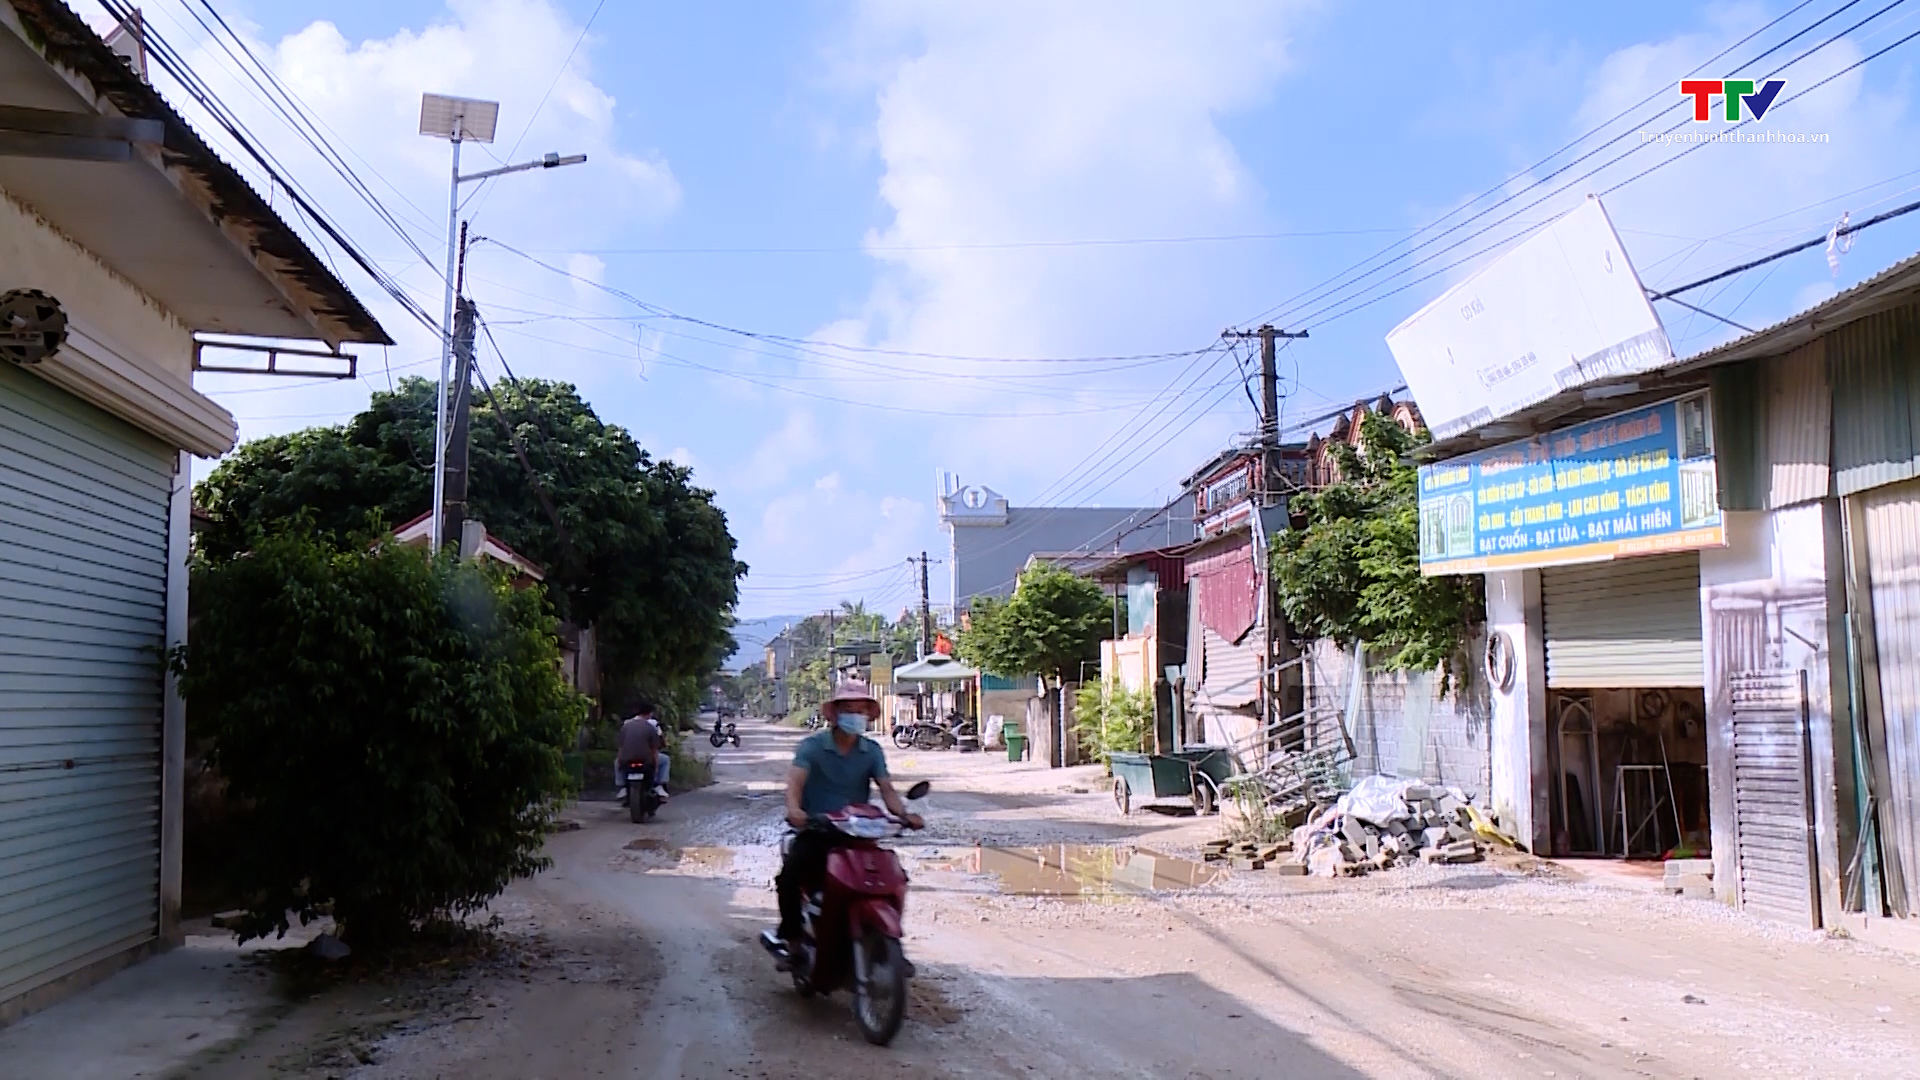 Đường tỉnh 526 qua xã Minh Lộc, huyện Hậu Lộc xuống cấp, gây ảnh hưởng đời sống nhân dân  - Ảnh 1.